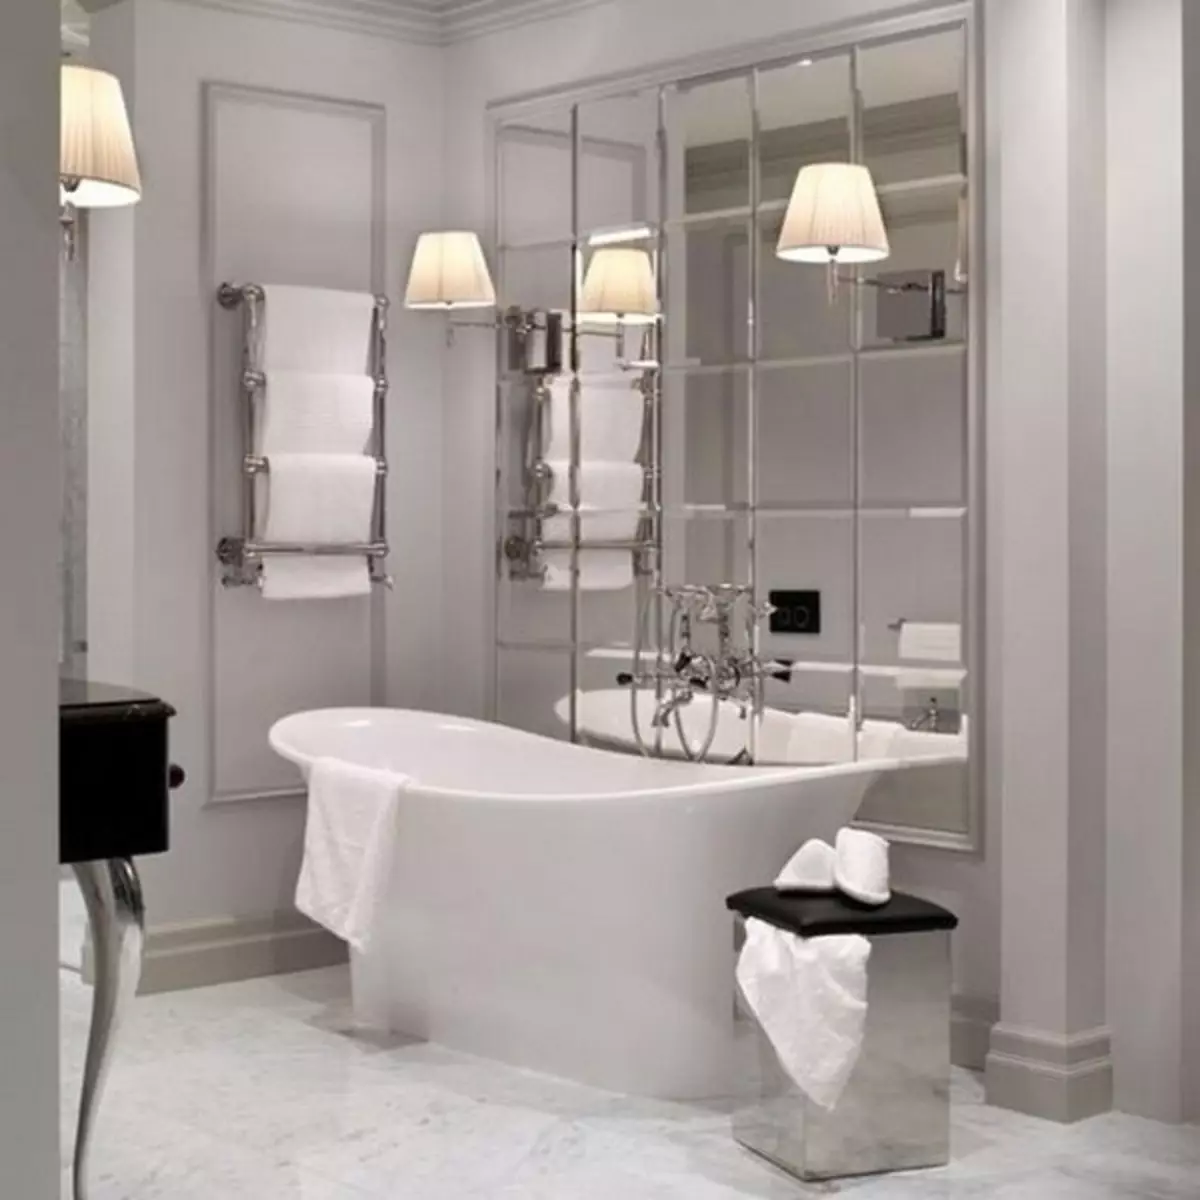 Зеркала в плитке ванной комнаты. Плитка зеркальная прямоугольник серебро с фацетом 480*120 пзс1-02. Зеркальная плитка в ванной. Стильные Ванные комнаты. Дизайн интерьера ванной комнаты.